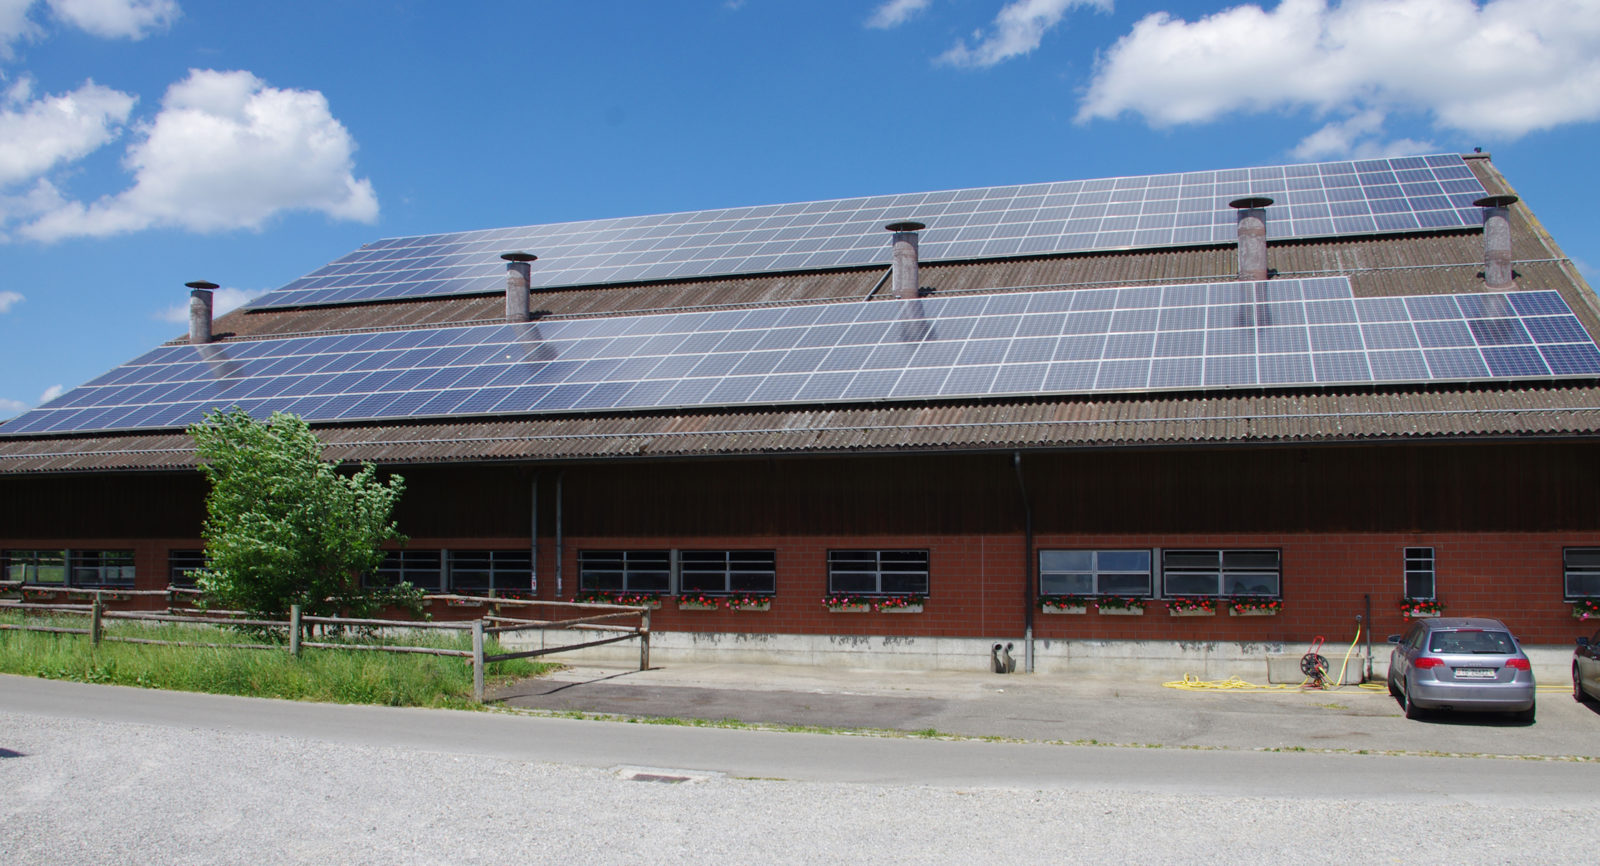 Neben der Biogasproduktion kommt auch die Photovoltaik zur Stromerzeugung zum Einsatz.